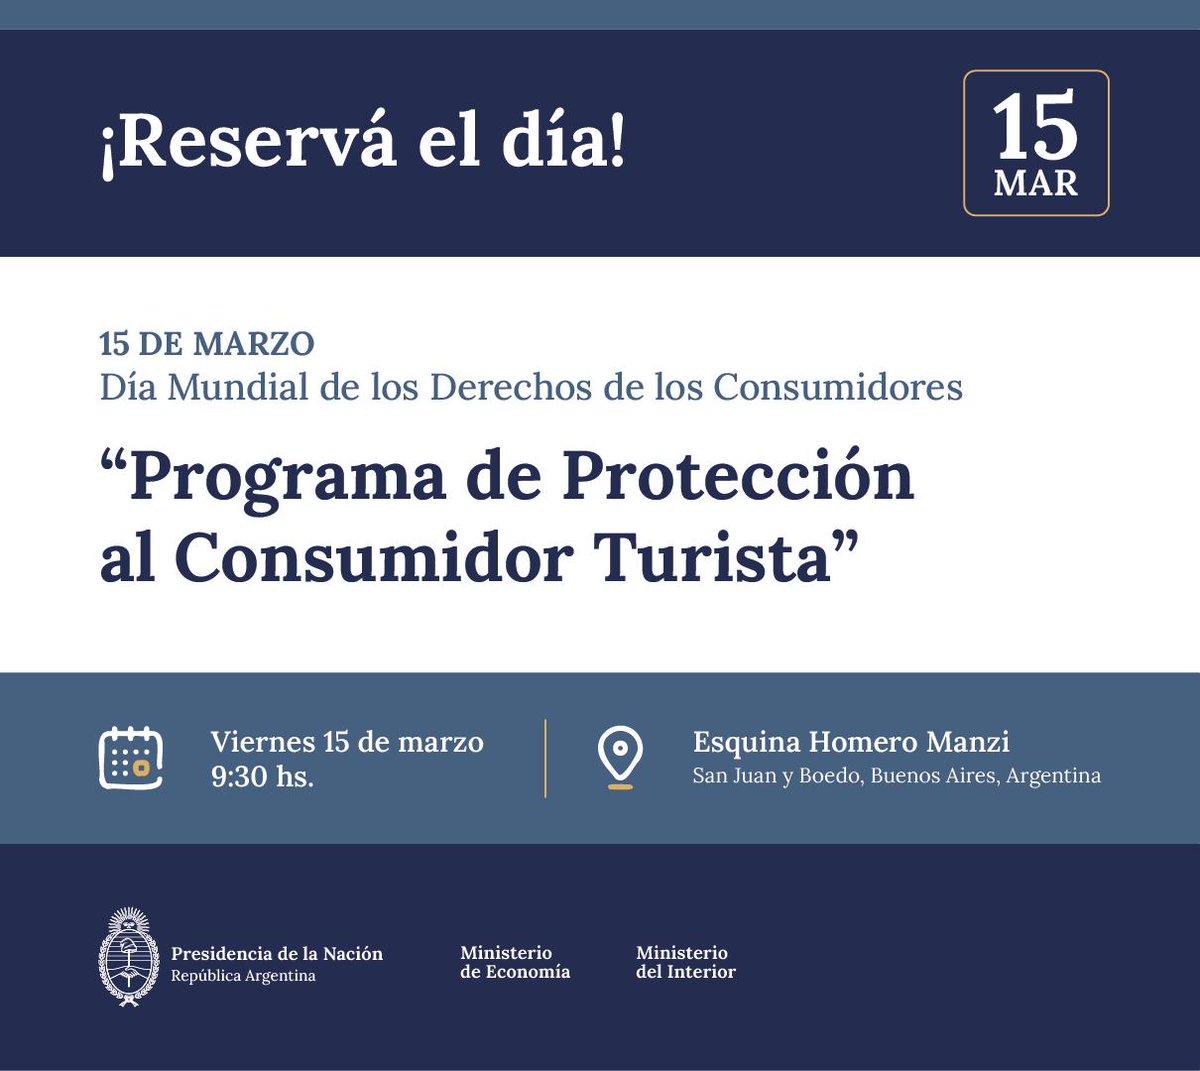 FernandoBlancoMuiño on X: "El viernes 15 vamos a presentar el "Programa de  Protección al Consumidor Turista", en el marco del Día Mundial de los  Derechos de los Consumidores. Lo haremos junto al